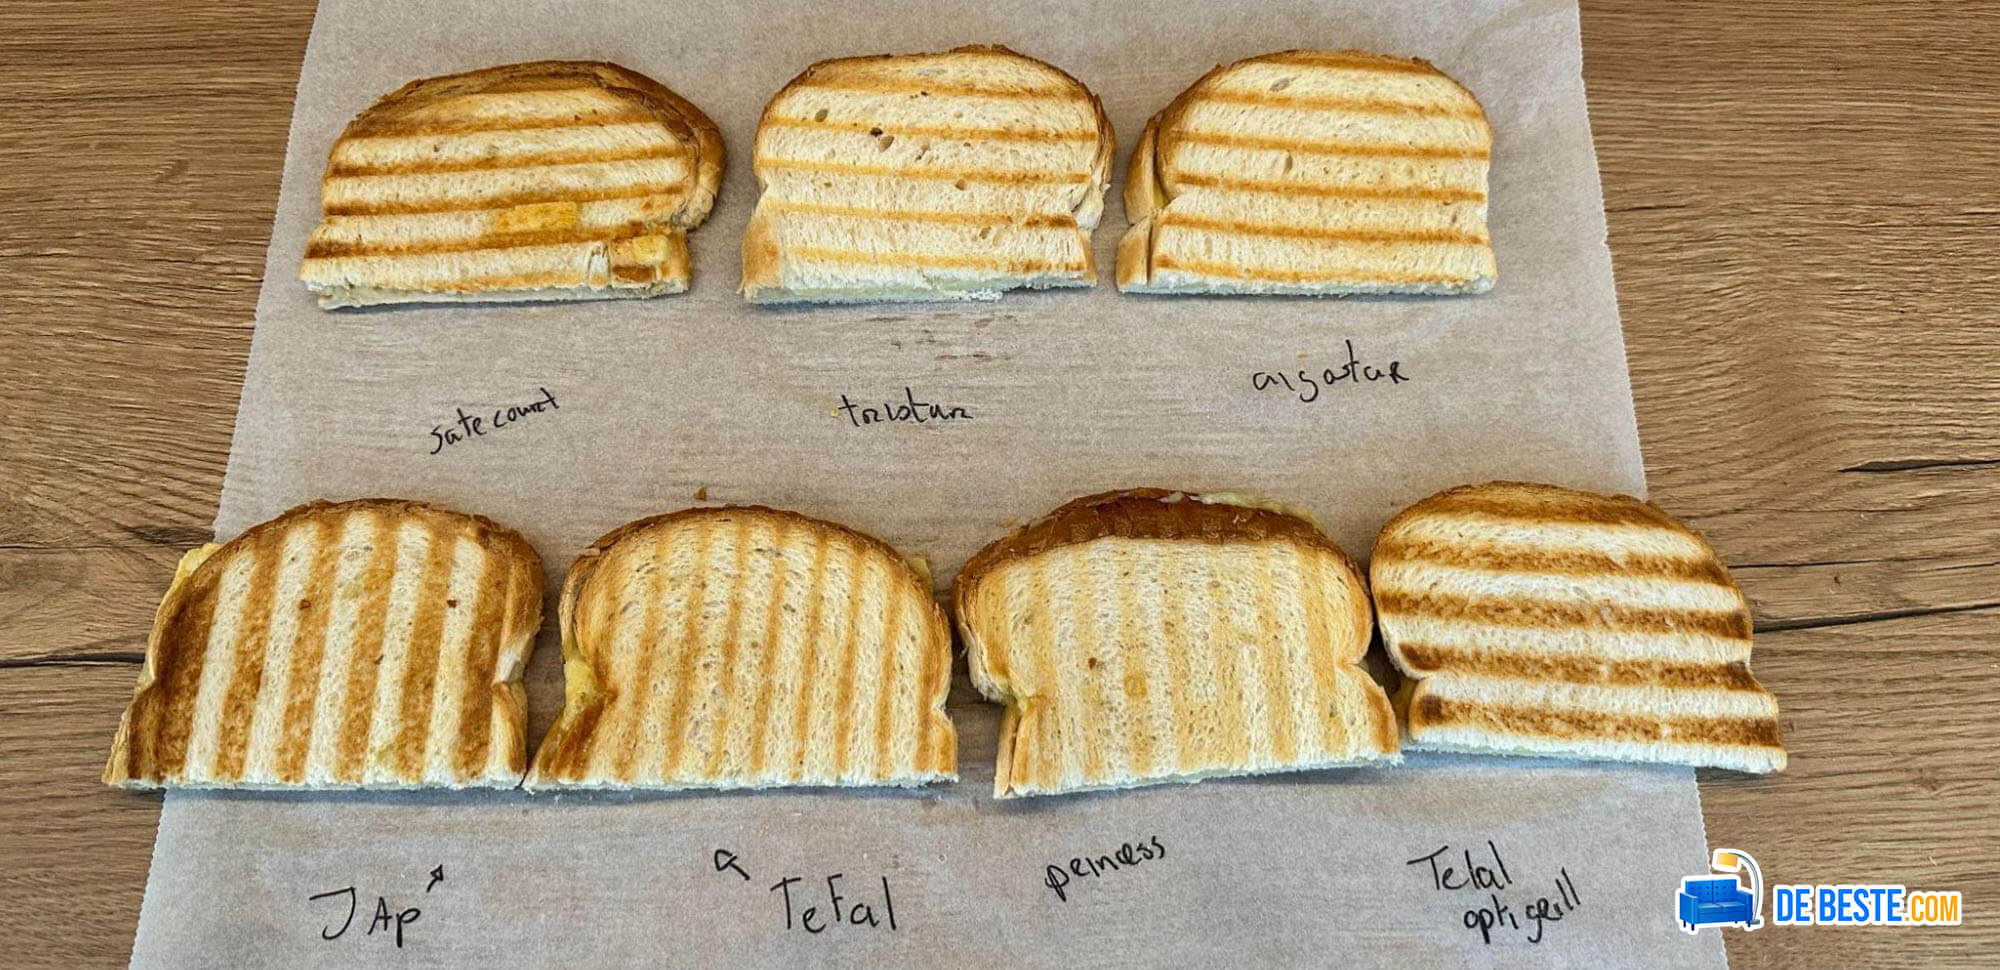 Vier sneetjes geroosterd brood op een beste contactgrill.